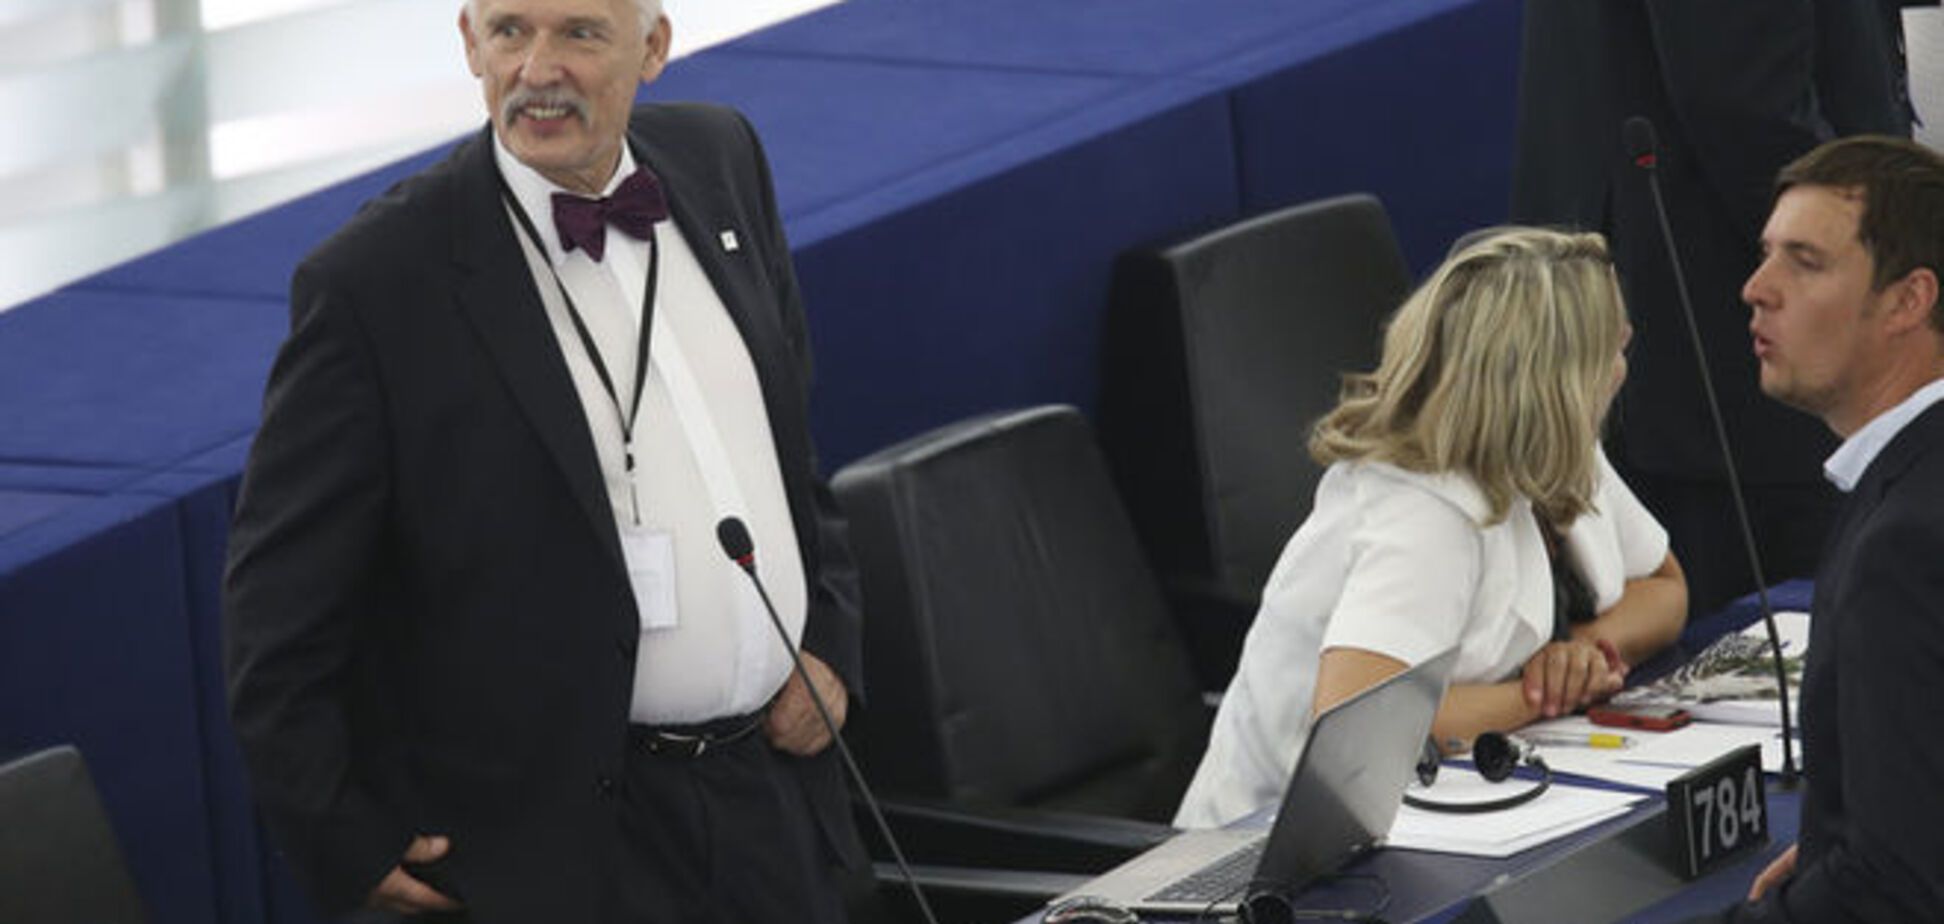 Один рейх, один народ, один билет: польський друг Путина показал в Европарламенте нацистский жест